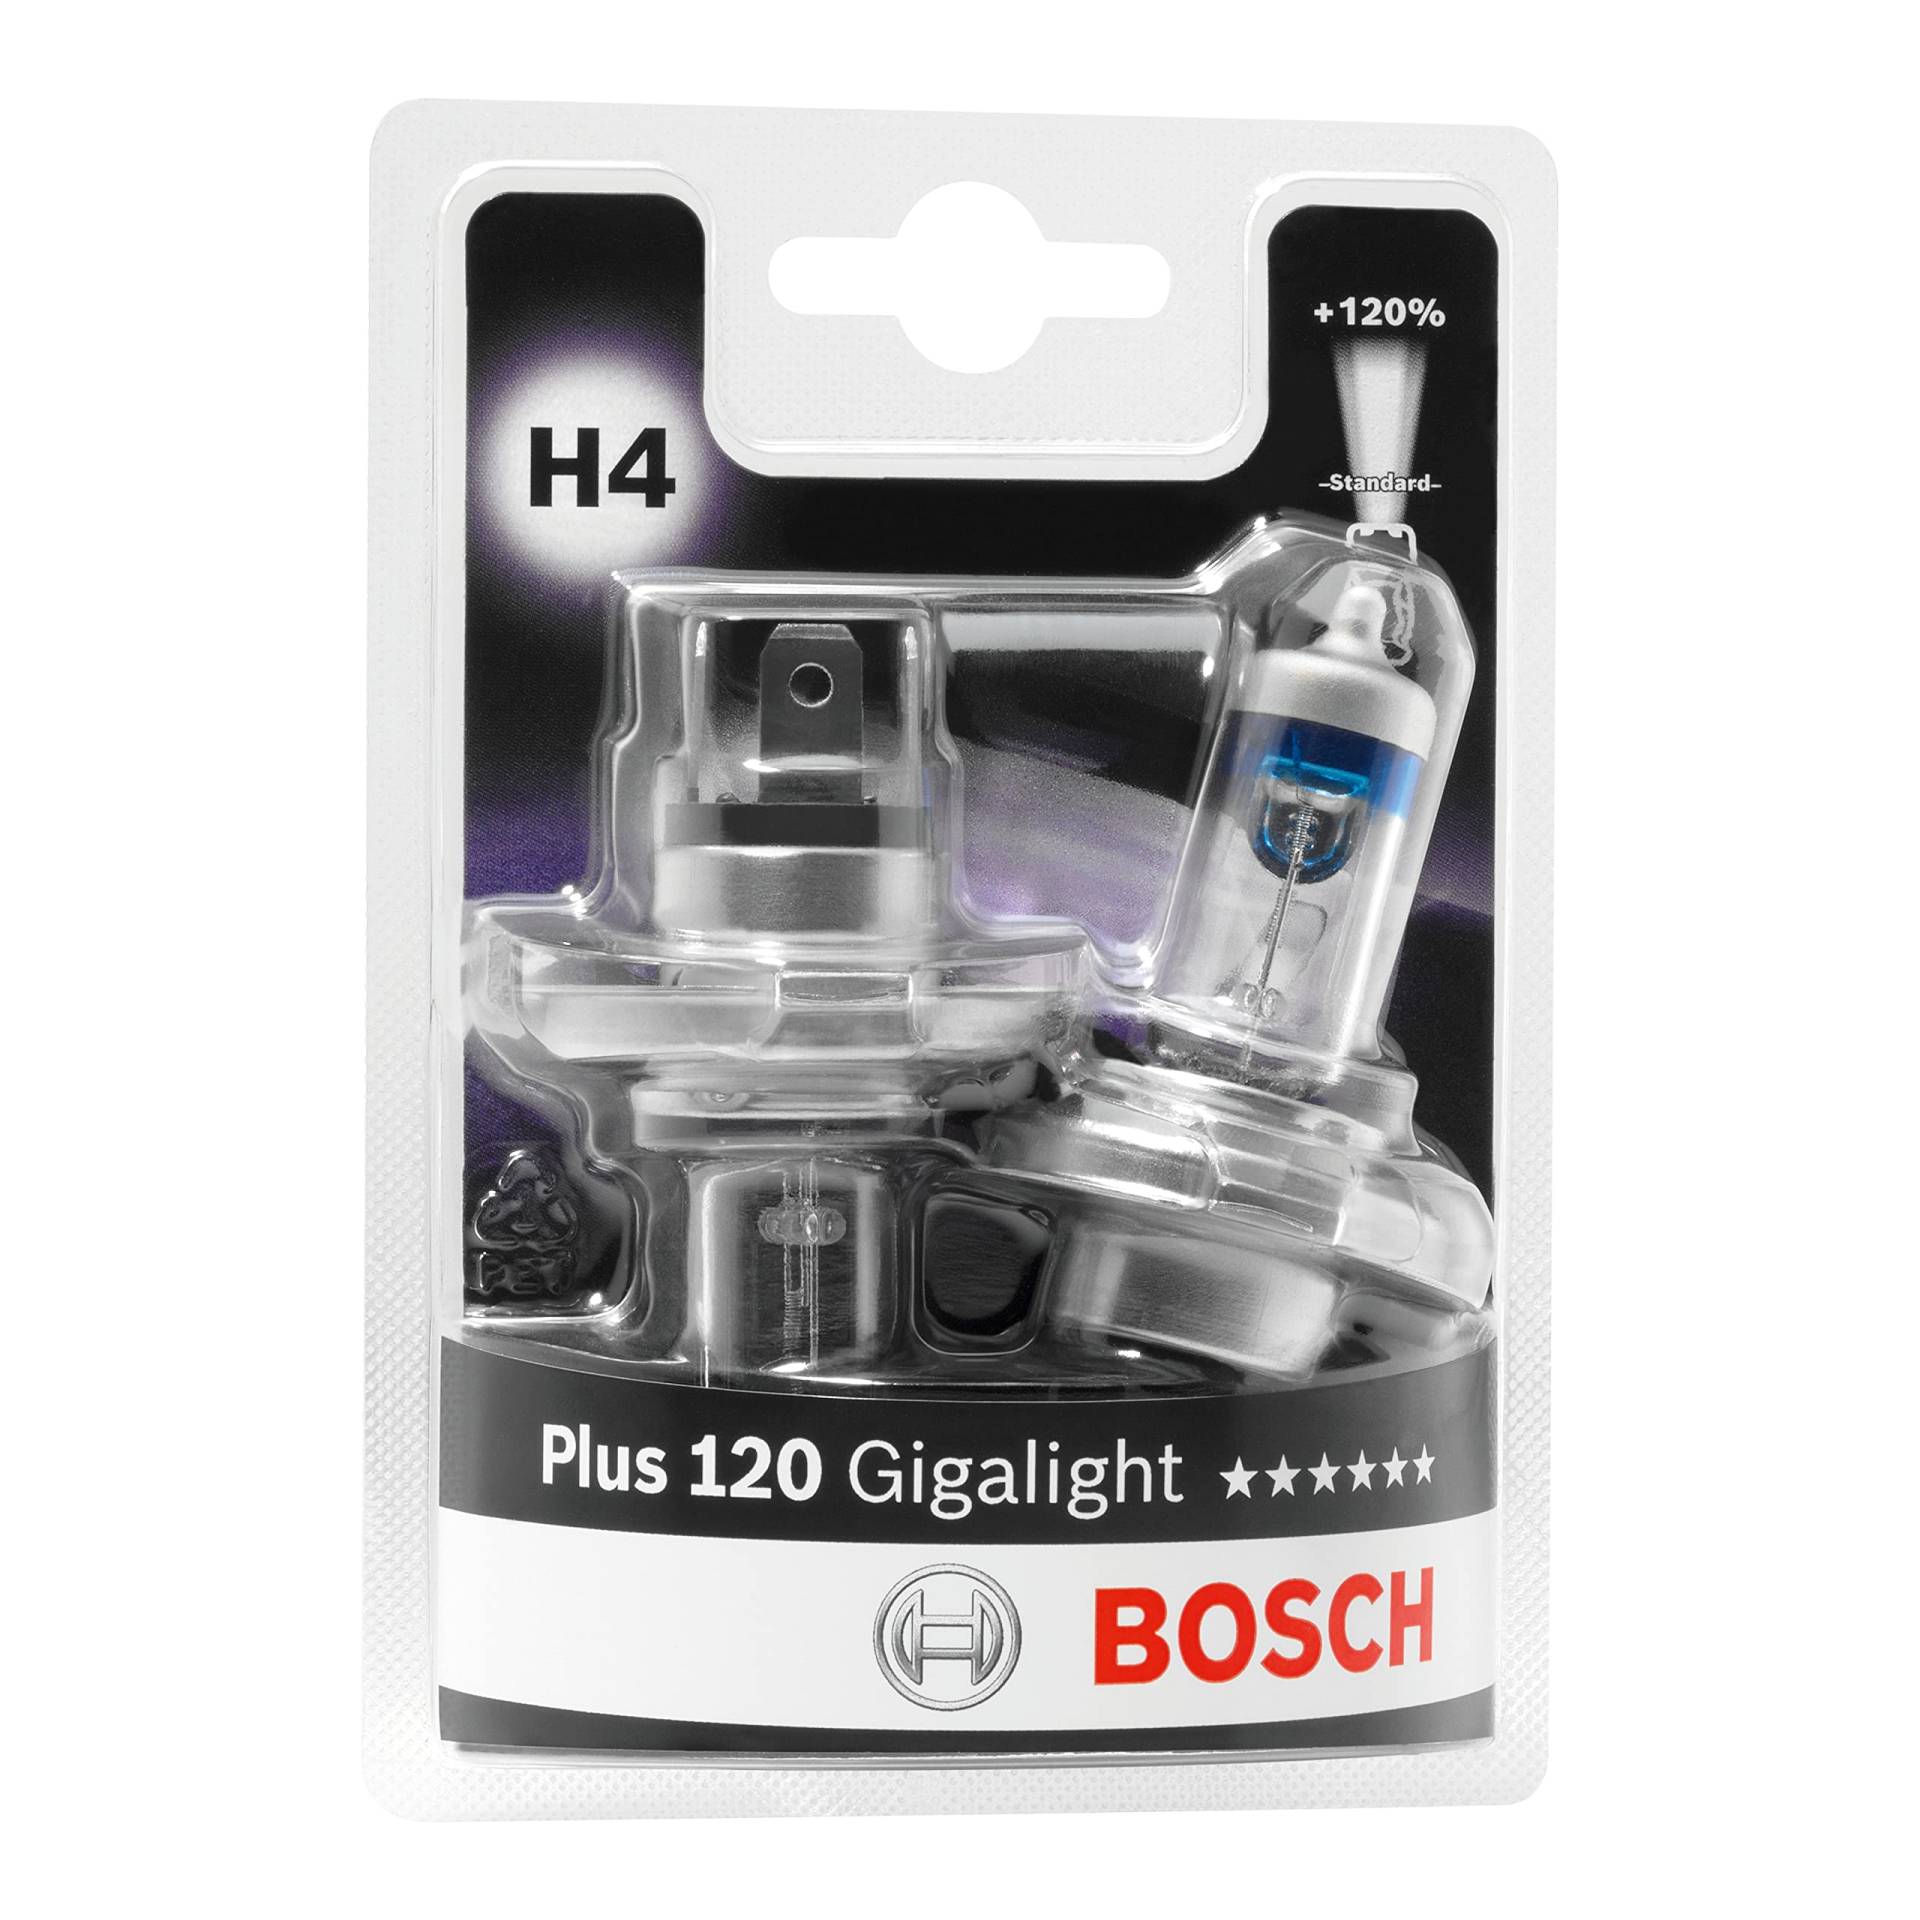 Bosch H4 Plus 120 Gigalight Lampen - 12 V 60/55 W P43t - 2 Stücke von Bosch Automotive